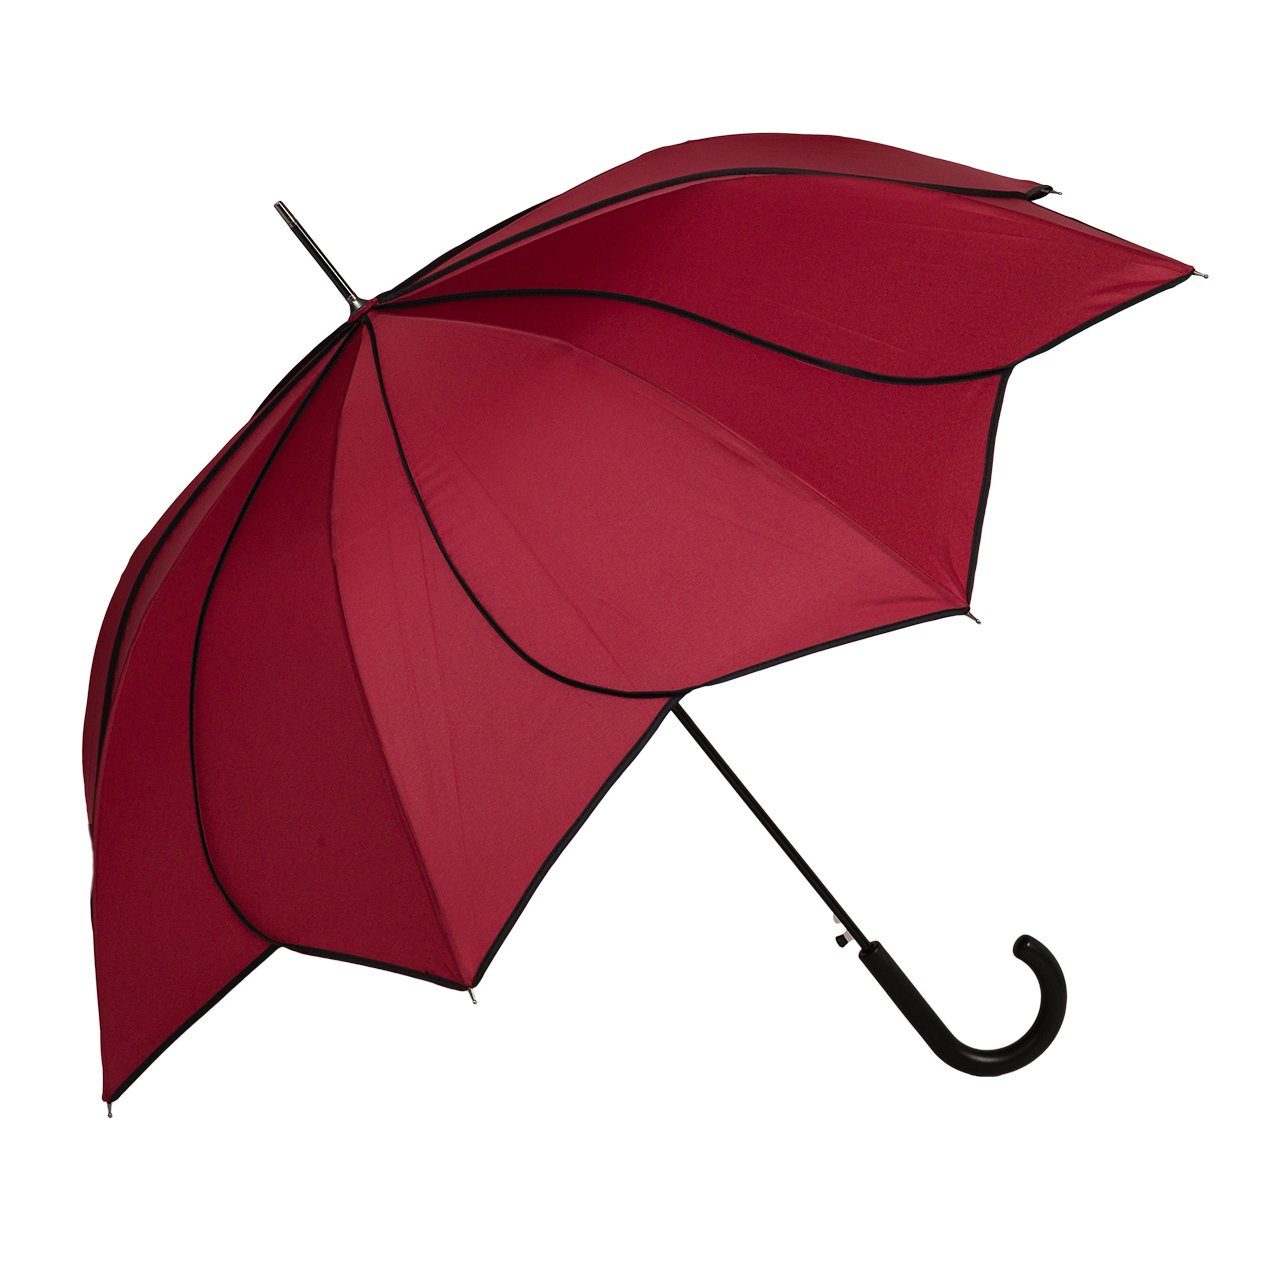 von Lilienfeld Stockregenschirm bordeaux schwarzer Ziernaht mit Sonnenschirm Minou, Hochzeitsschirm Regenschirm Blütenform